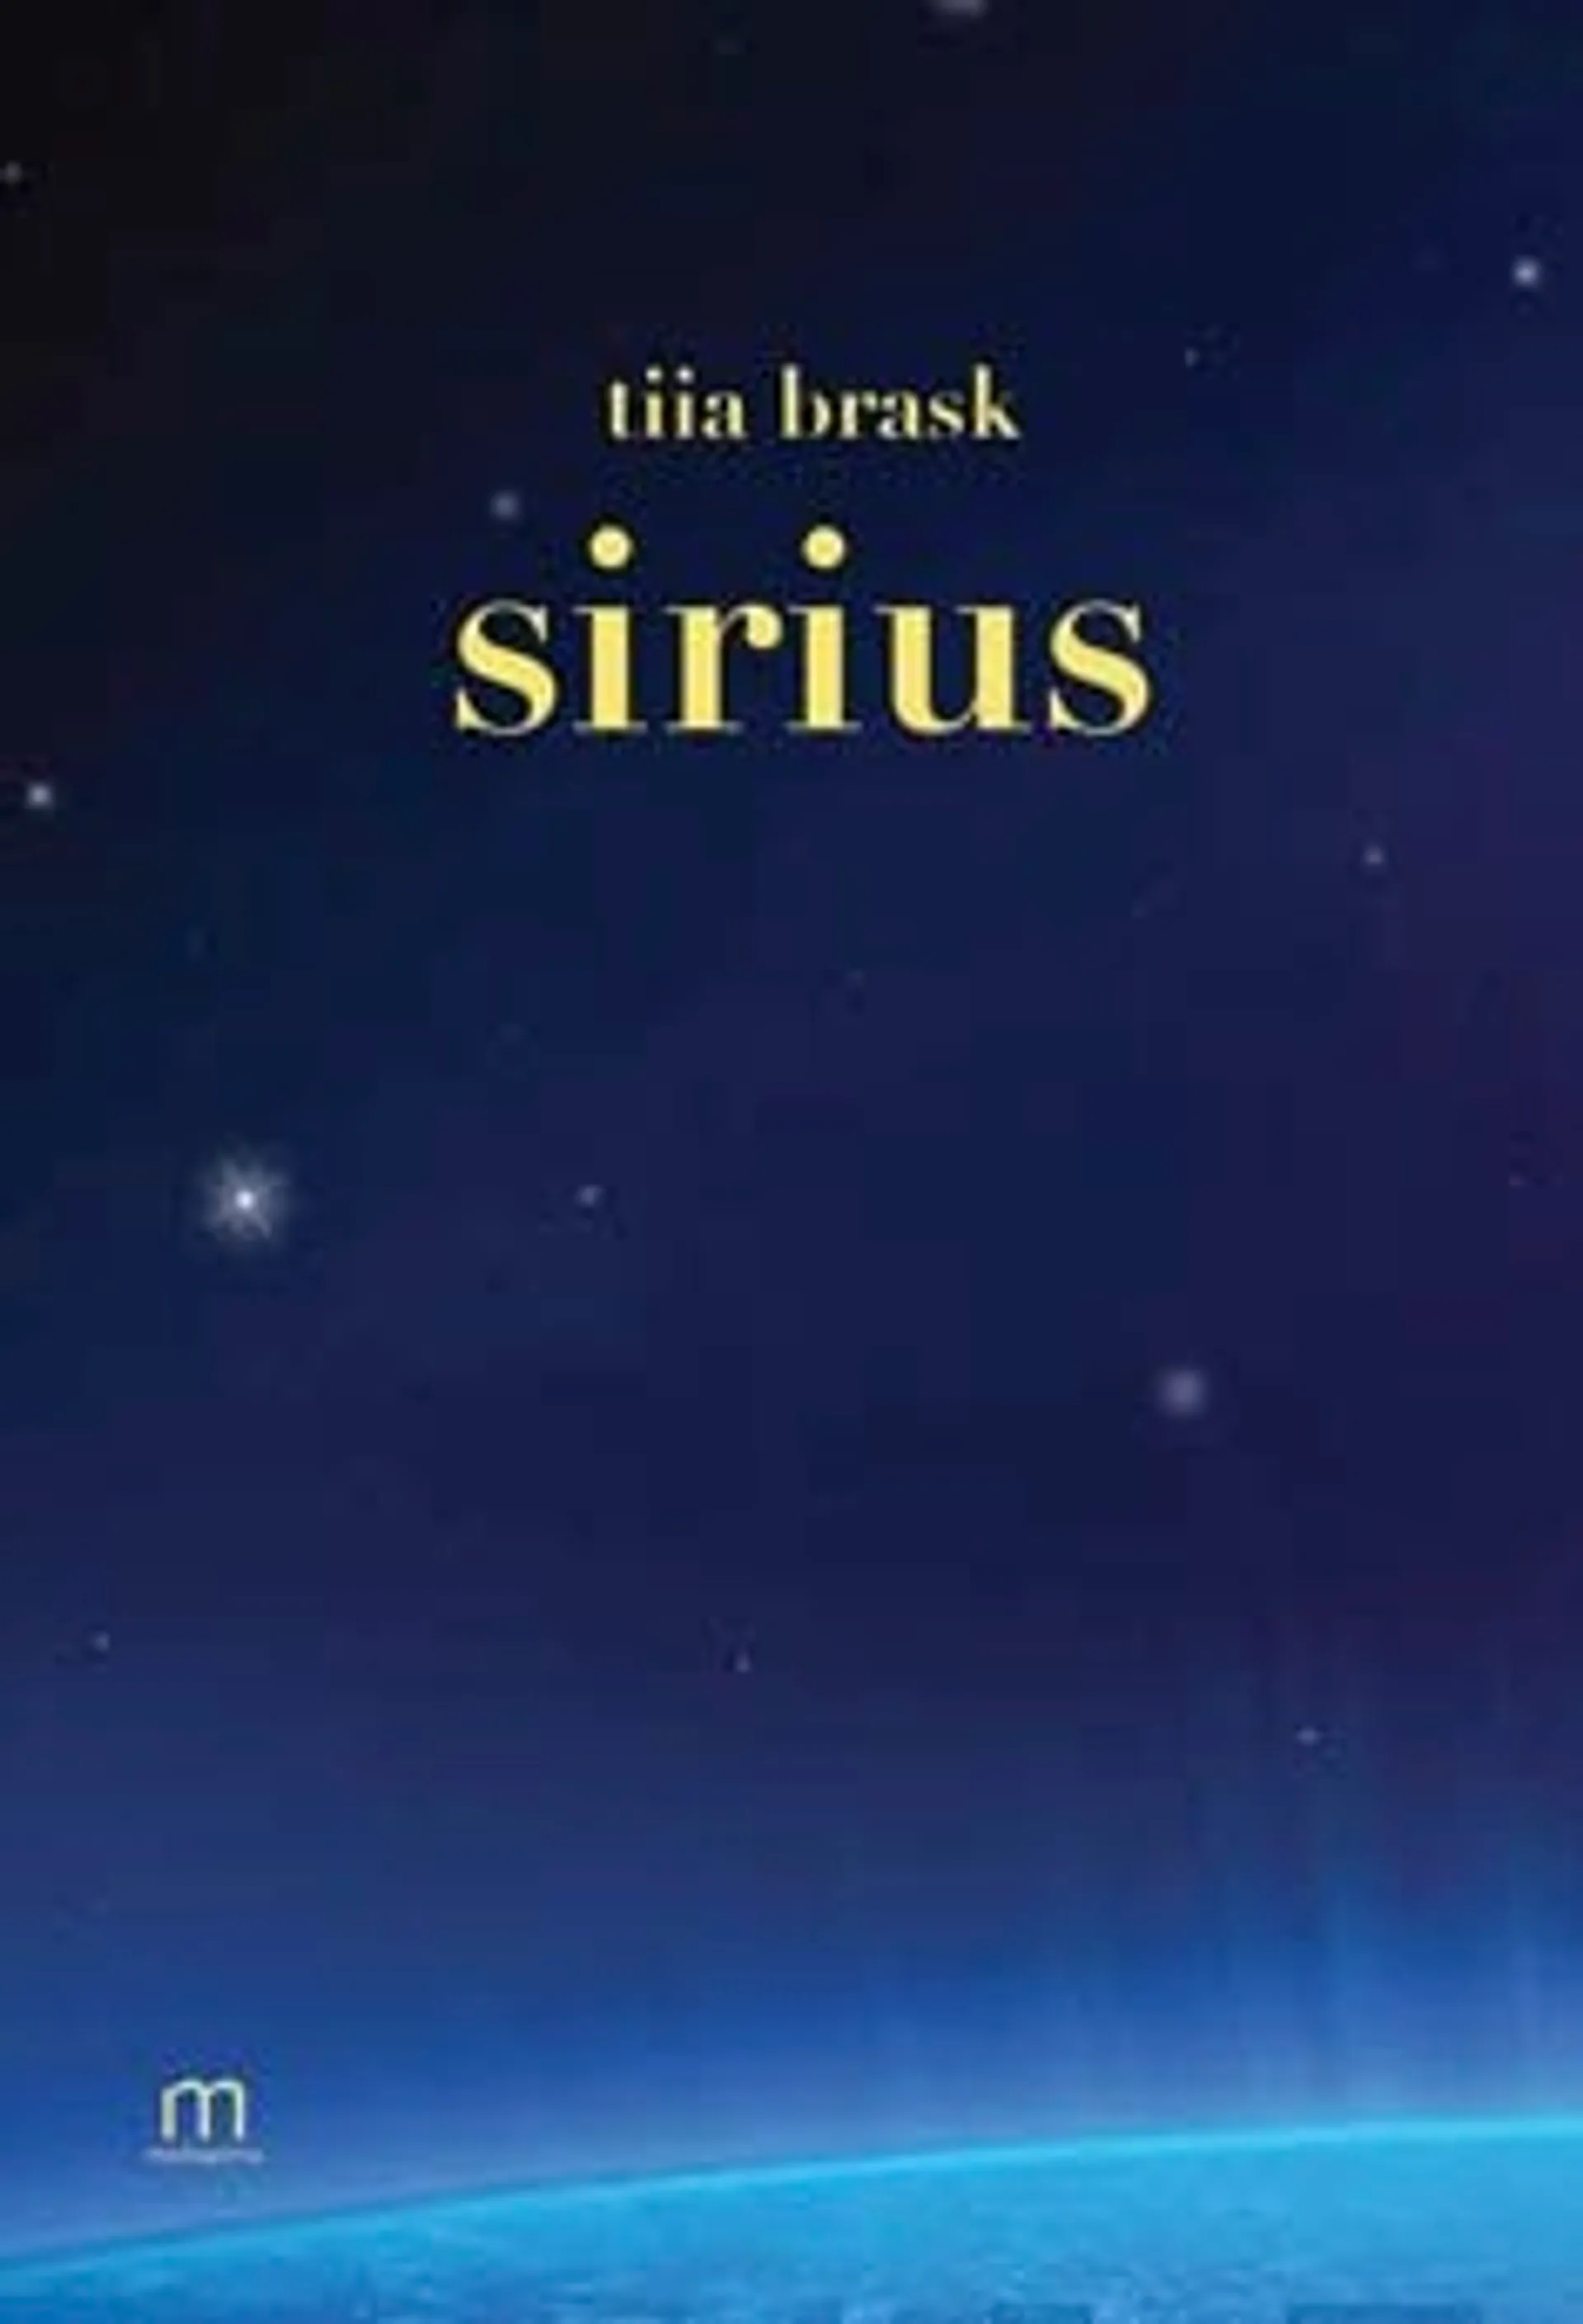 Brask, Sirius